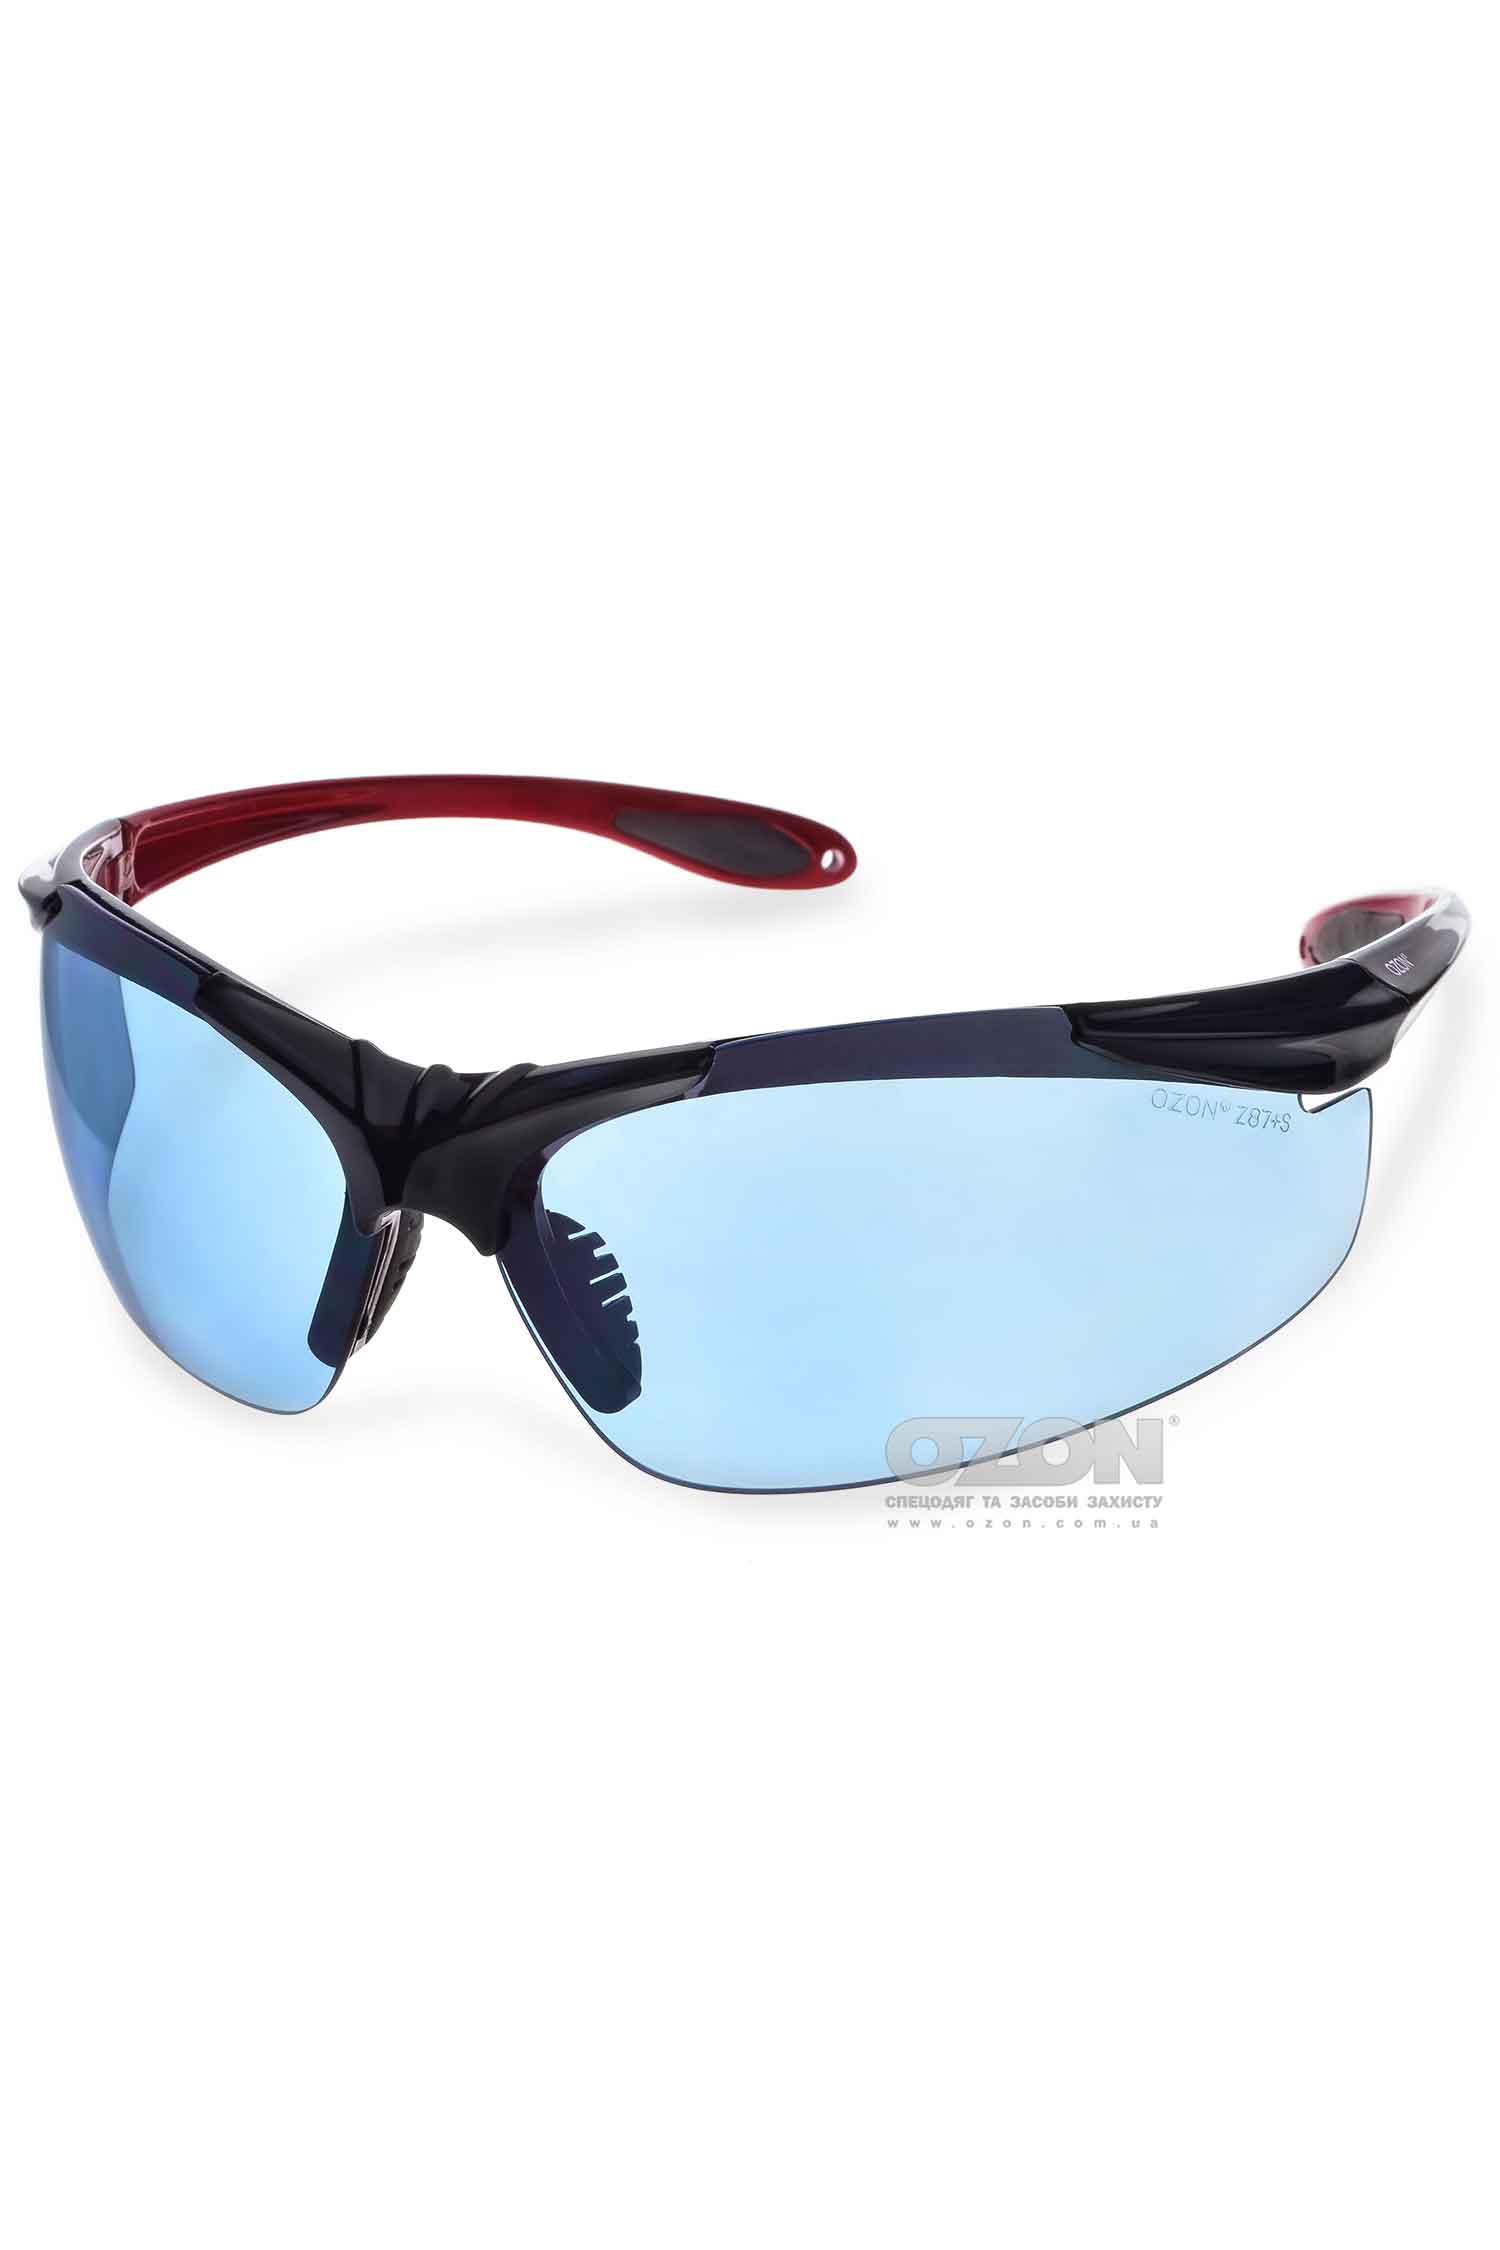 Захисні окуляри OZON™ 7-057, спортивні - Фото 1